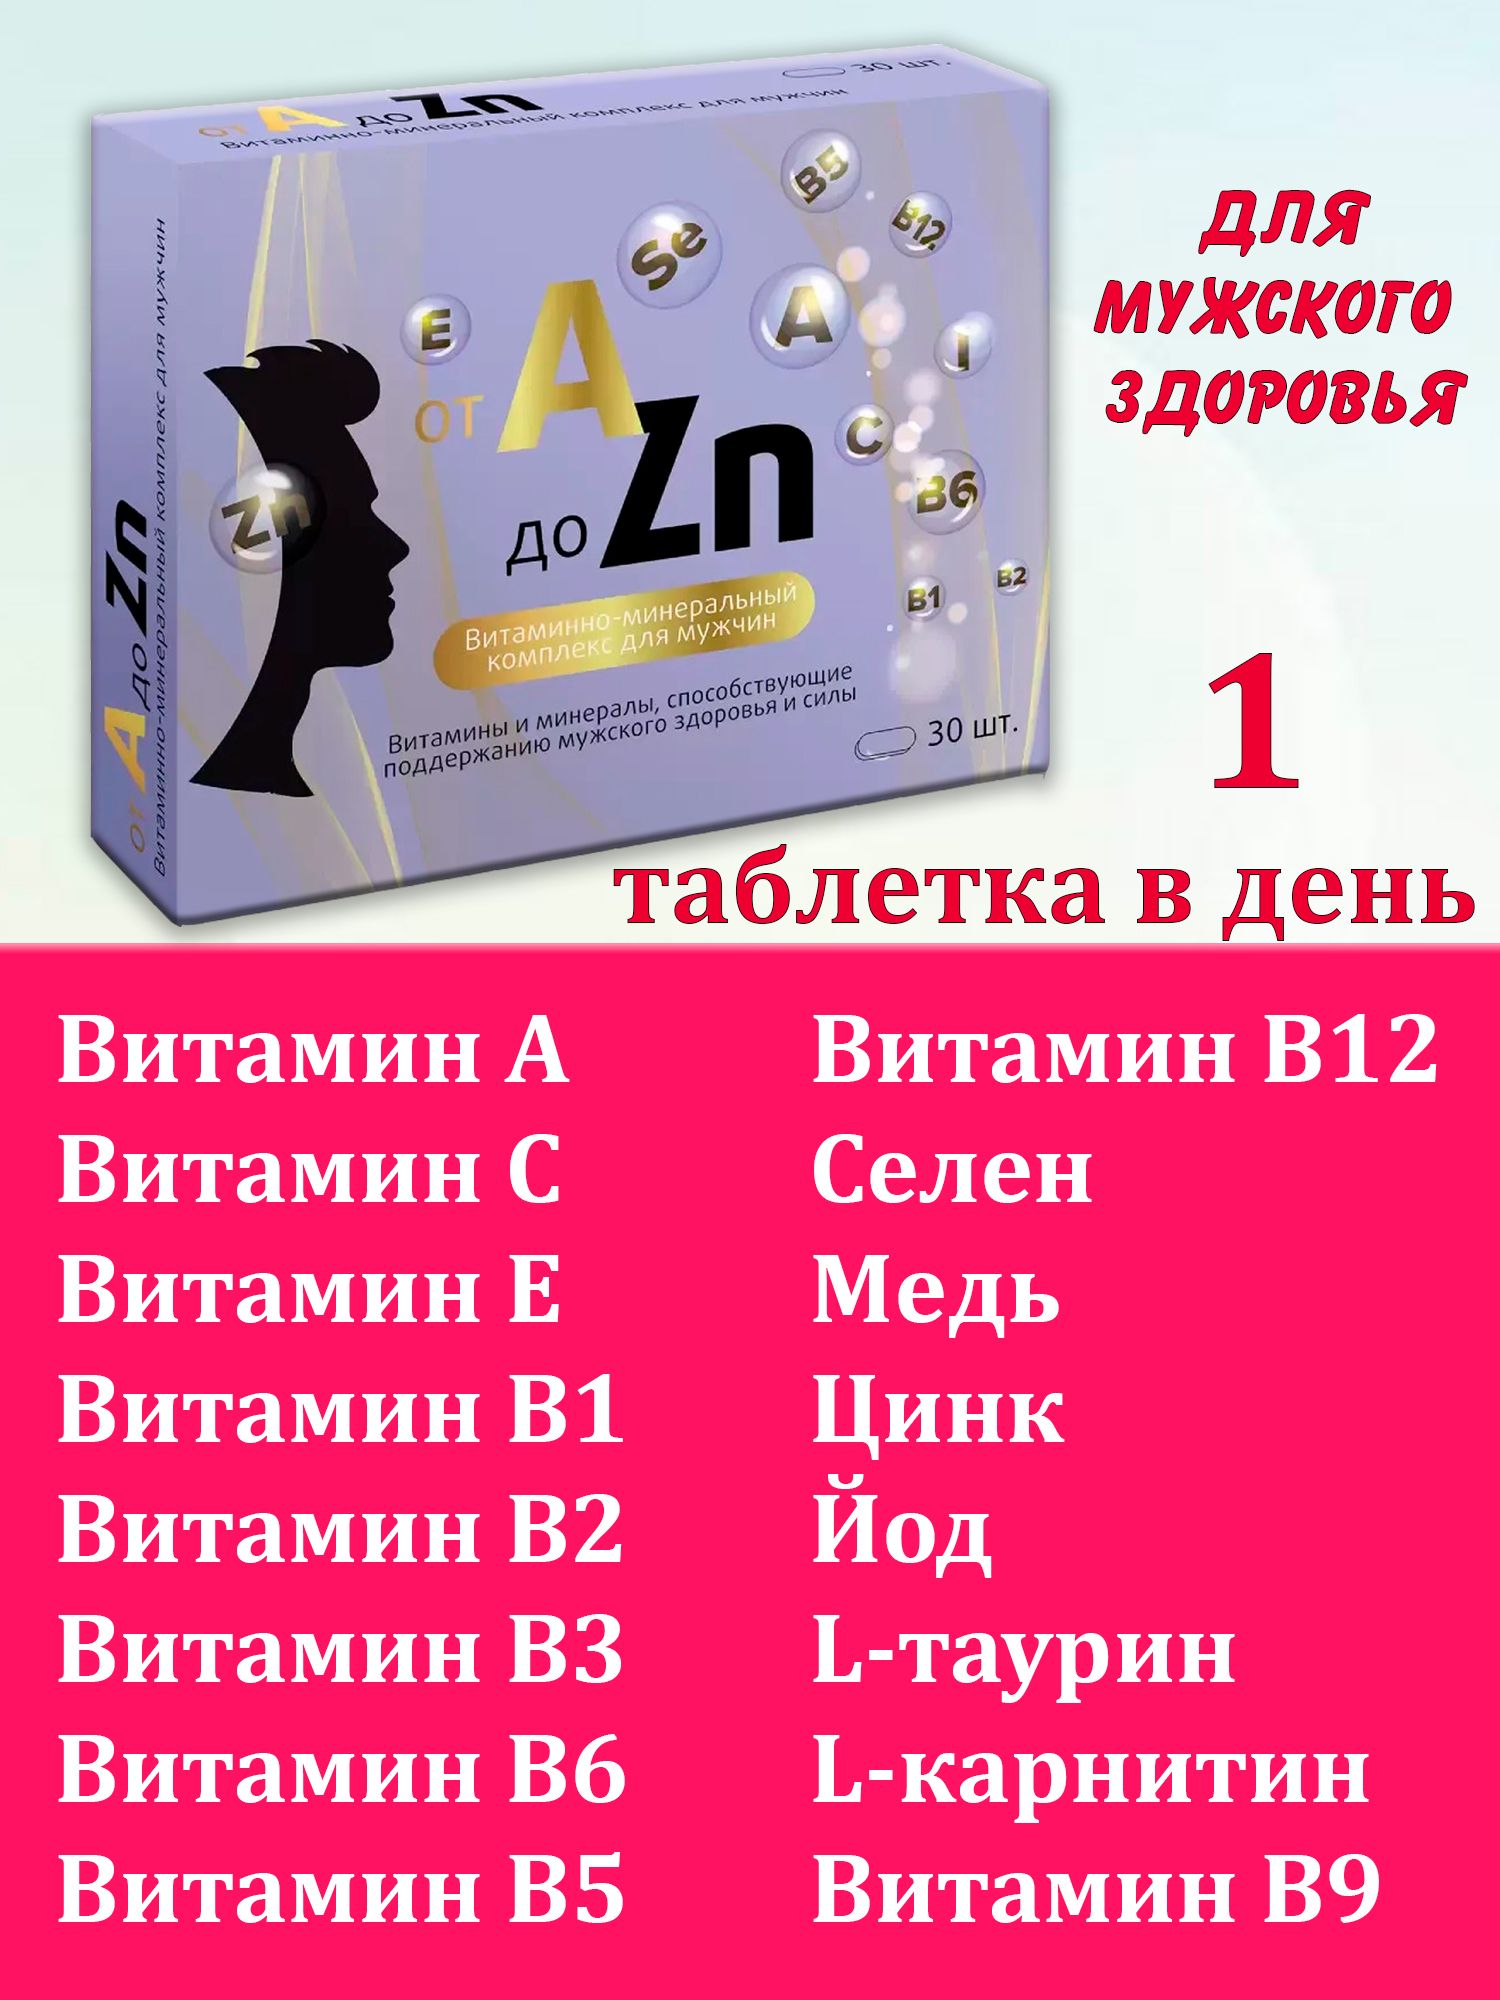 Витаминный комплекс a-ZN для мужчин. Витаминный комплекс a-ZN для мужчин таблетки отзывы. Витаминный комплекс a-ZN 30 шт инструкция. Витаминный комплекс для мужчин от а до ZN отзывы.